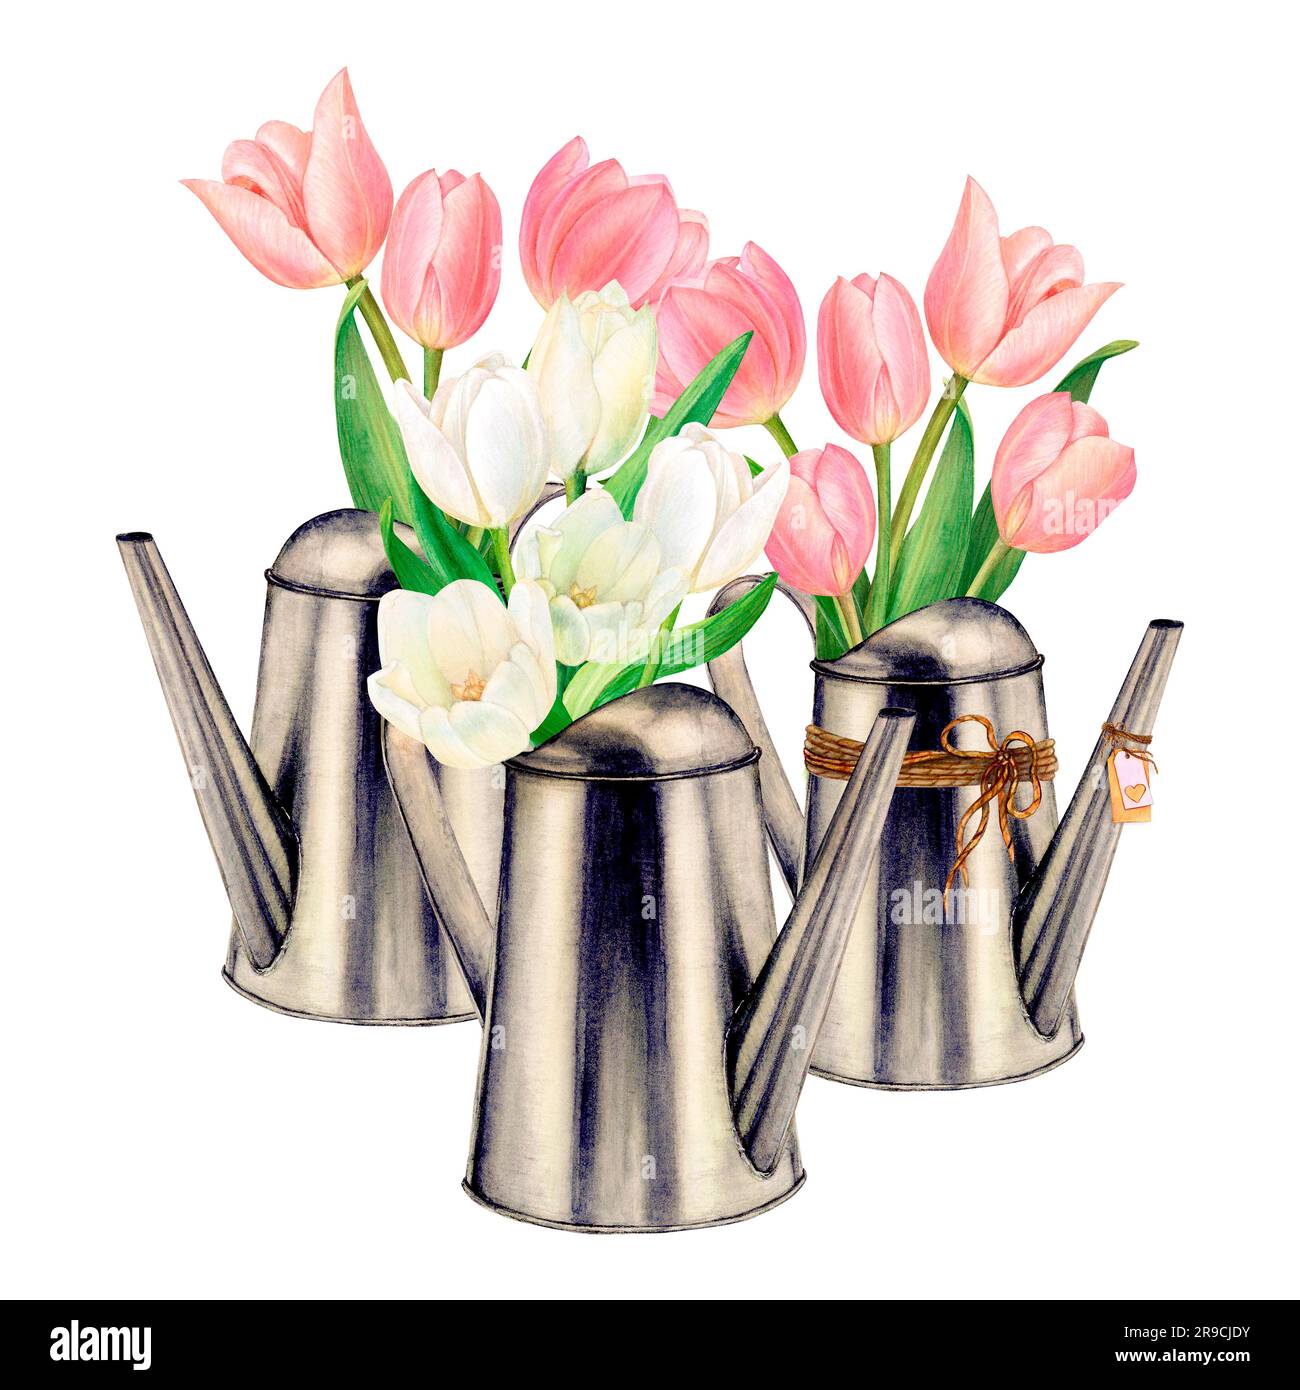 Aquarelle ensemble de arrosoirs en métal avec de beaux bouquets de fleurs de tulipe blanc et rose sur fond blanc. Idéal pour les autocollants et le logo Banque D'Images